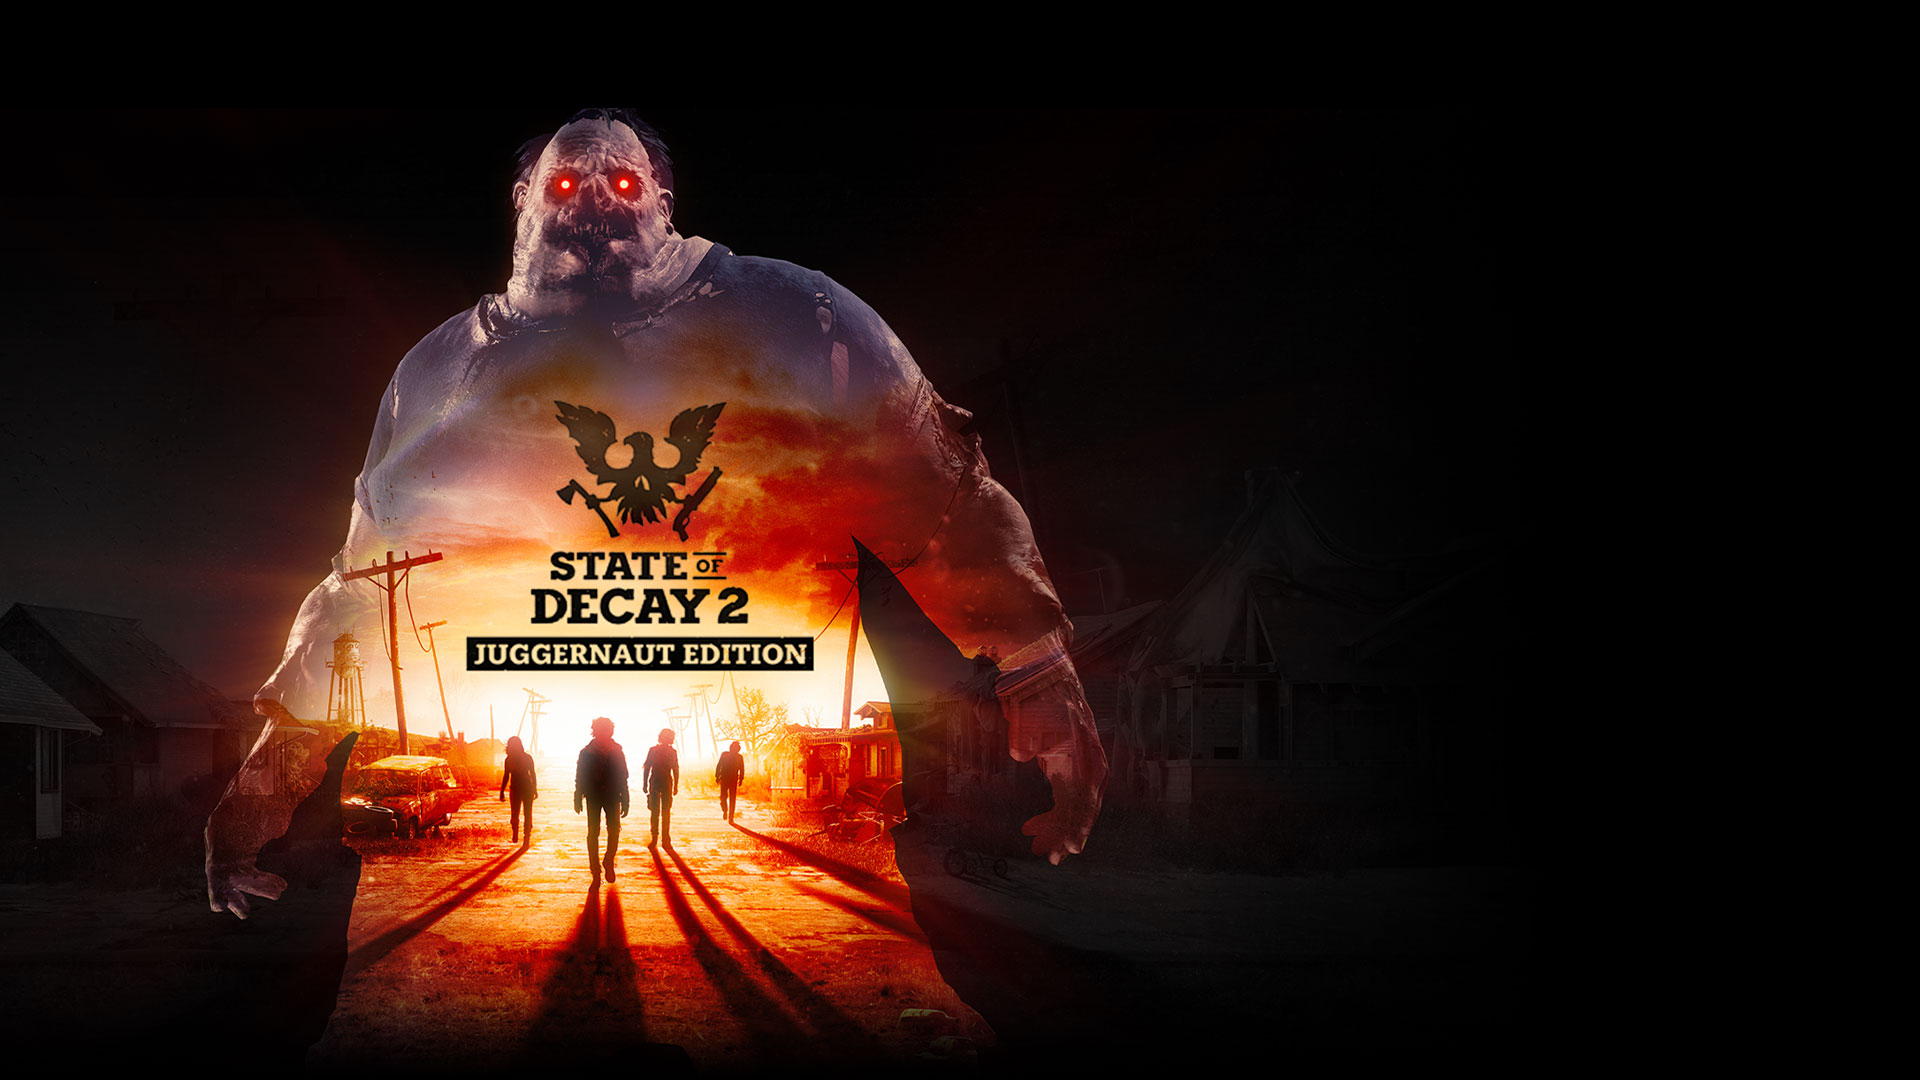 State of Decay 2: Juggernaut Edition, silhouet van de Juggernaut met zombies in een verlaten straat